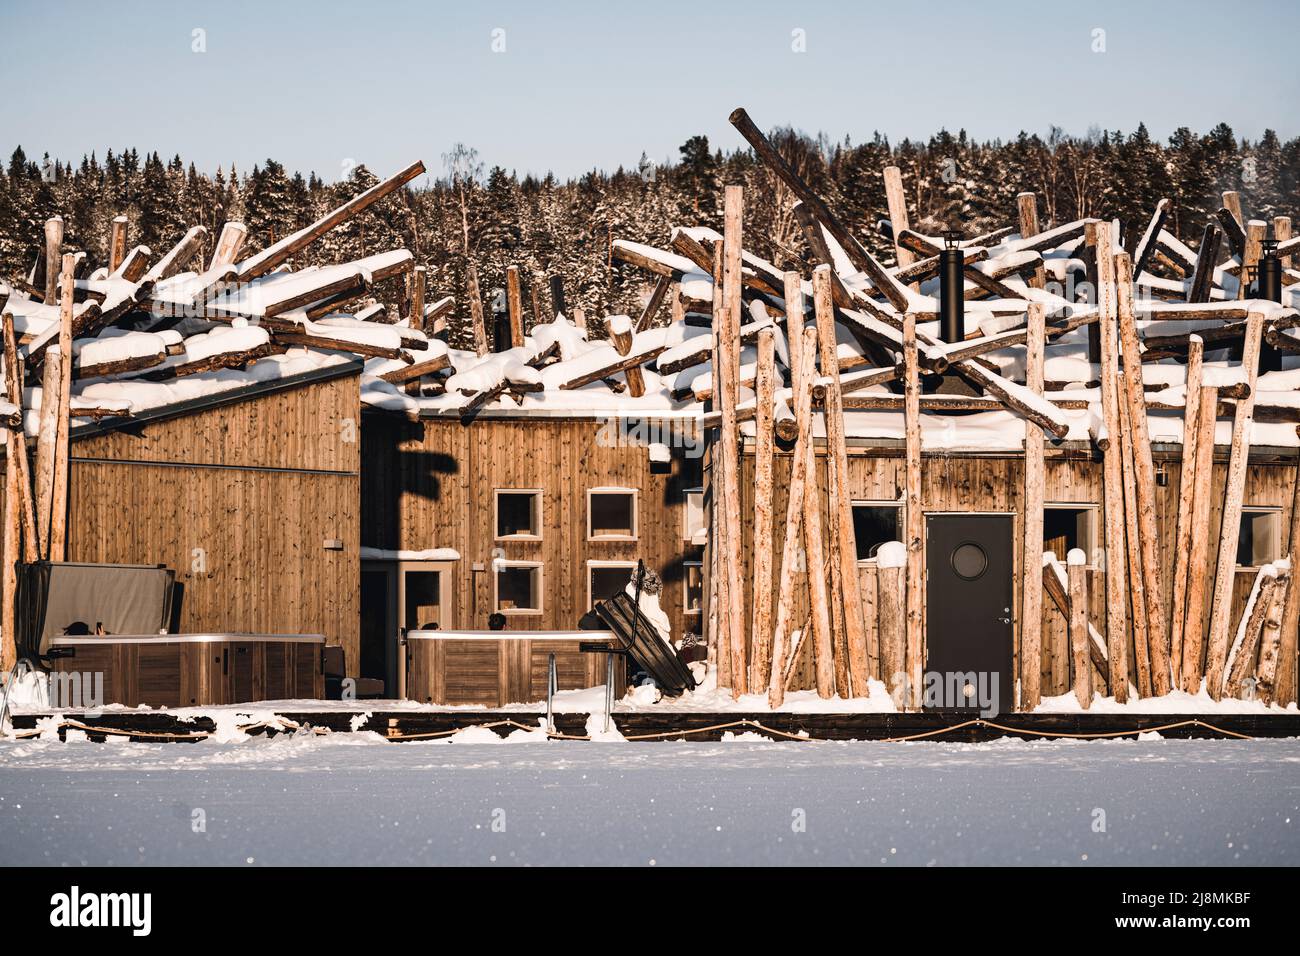 Complejo de diseño escandinavo del hotel ecológico Arctic Bath Spa, construido con madera local, Harads, Laponia, Suecia Foto de stock